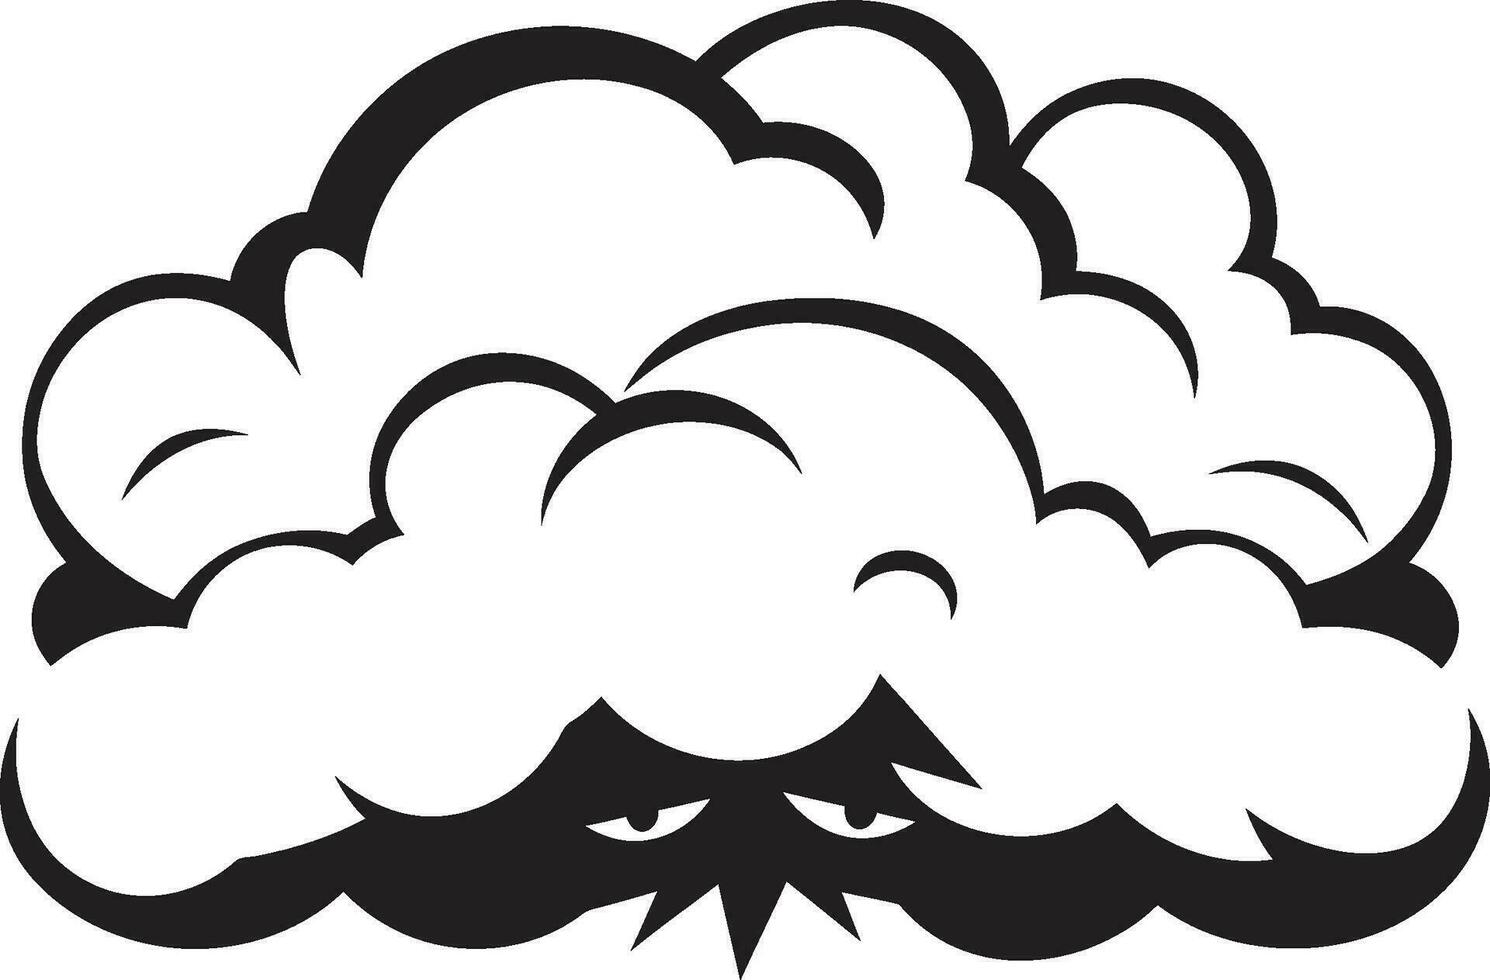 minaccioso testa di tuono arrabbiato nube emblema design furioso cumulo nero arrabbiato nube logo vettore